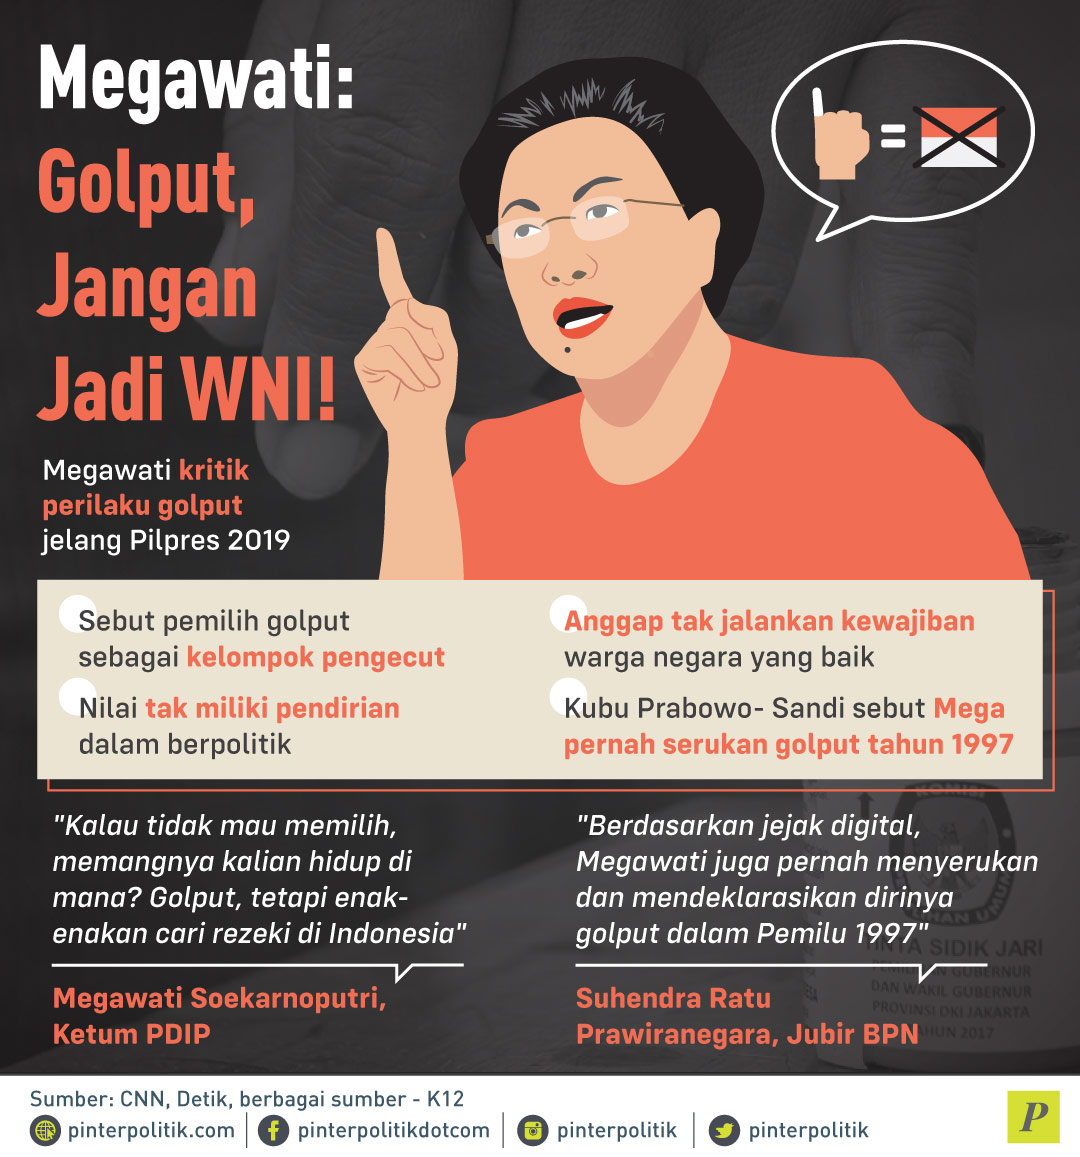 Megawati kritik perilaku golput jelang pilpres 2019